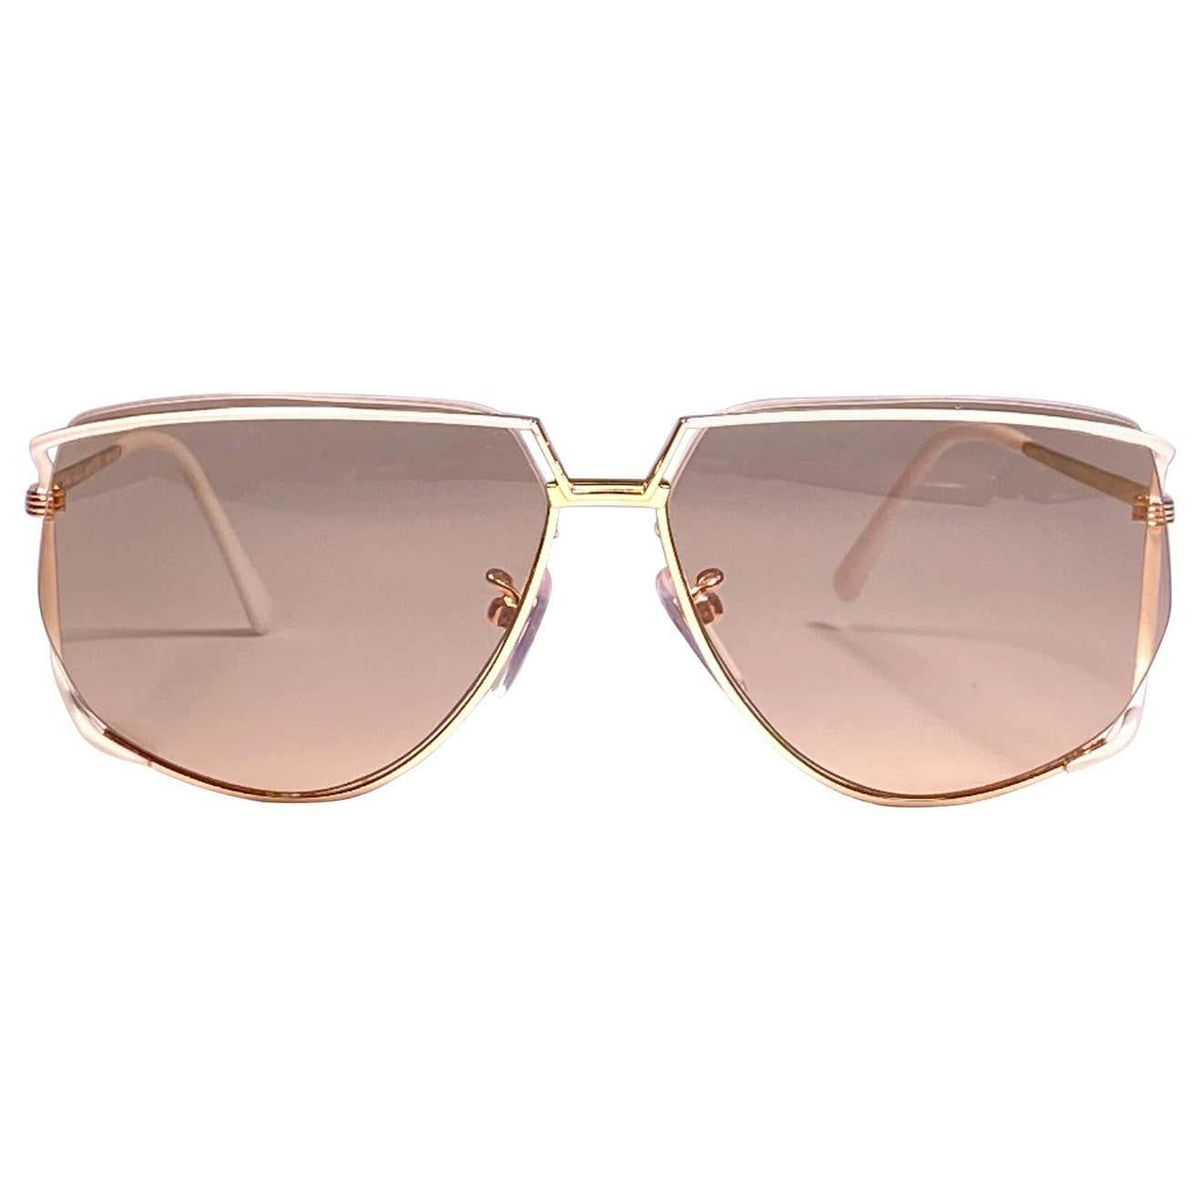 tura 425 ultra rare 1970s oversized gold and white light lenses sunglasses